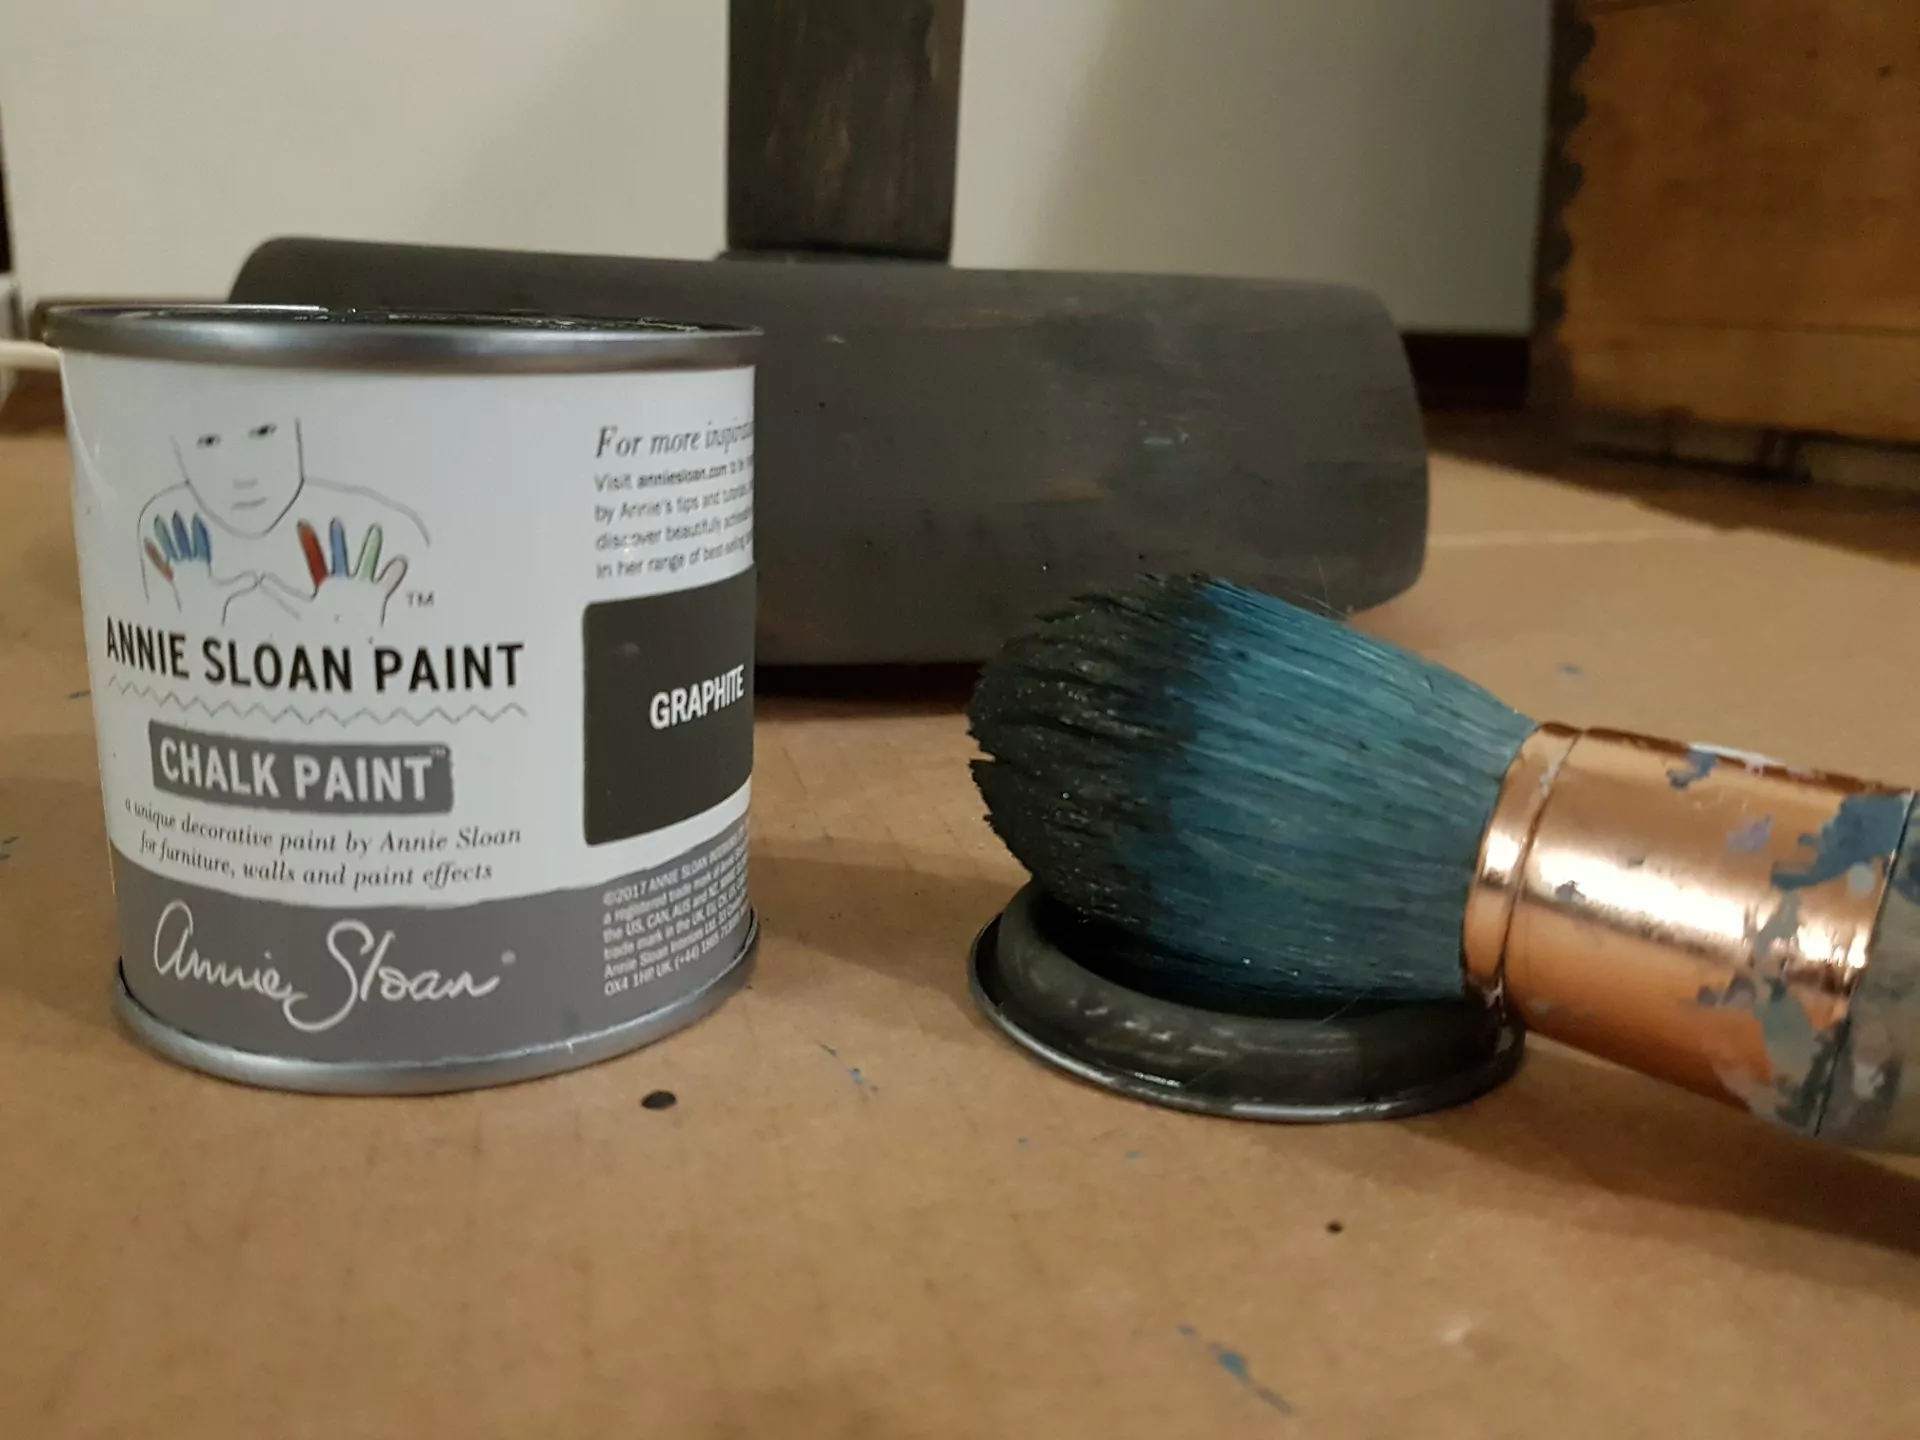 jak odnowić lampę, pędzel ubrudzony szarą farbą, puszka farby kredowej Annie Sloan kolor Graphite, w tle pomalowana na szaro podstawa lampy podłogowej